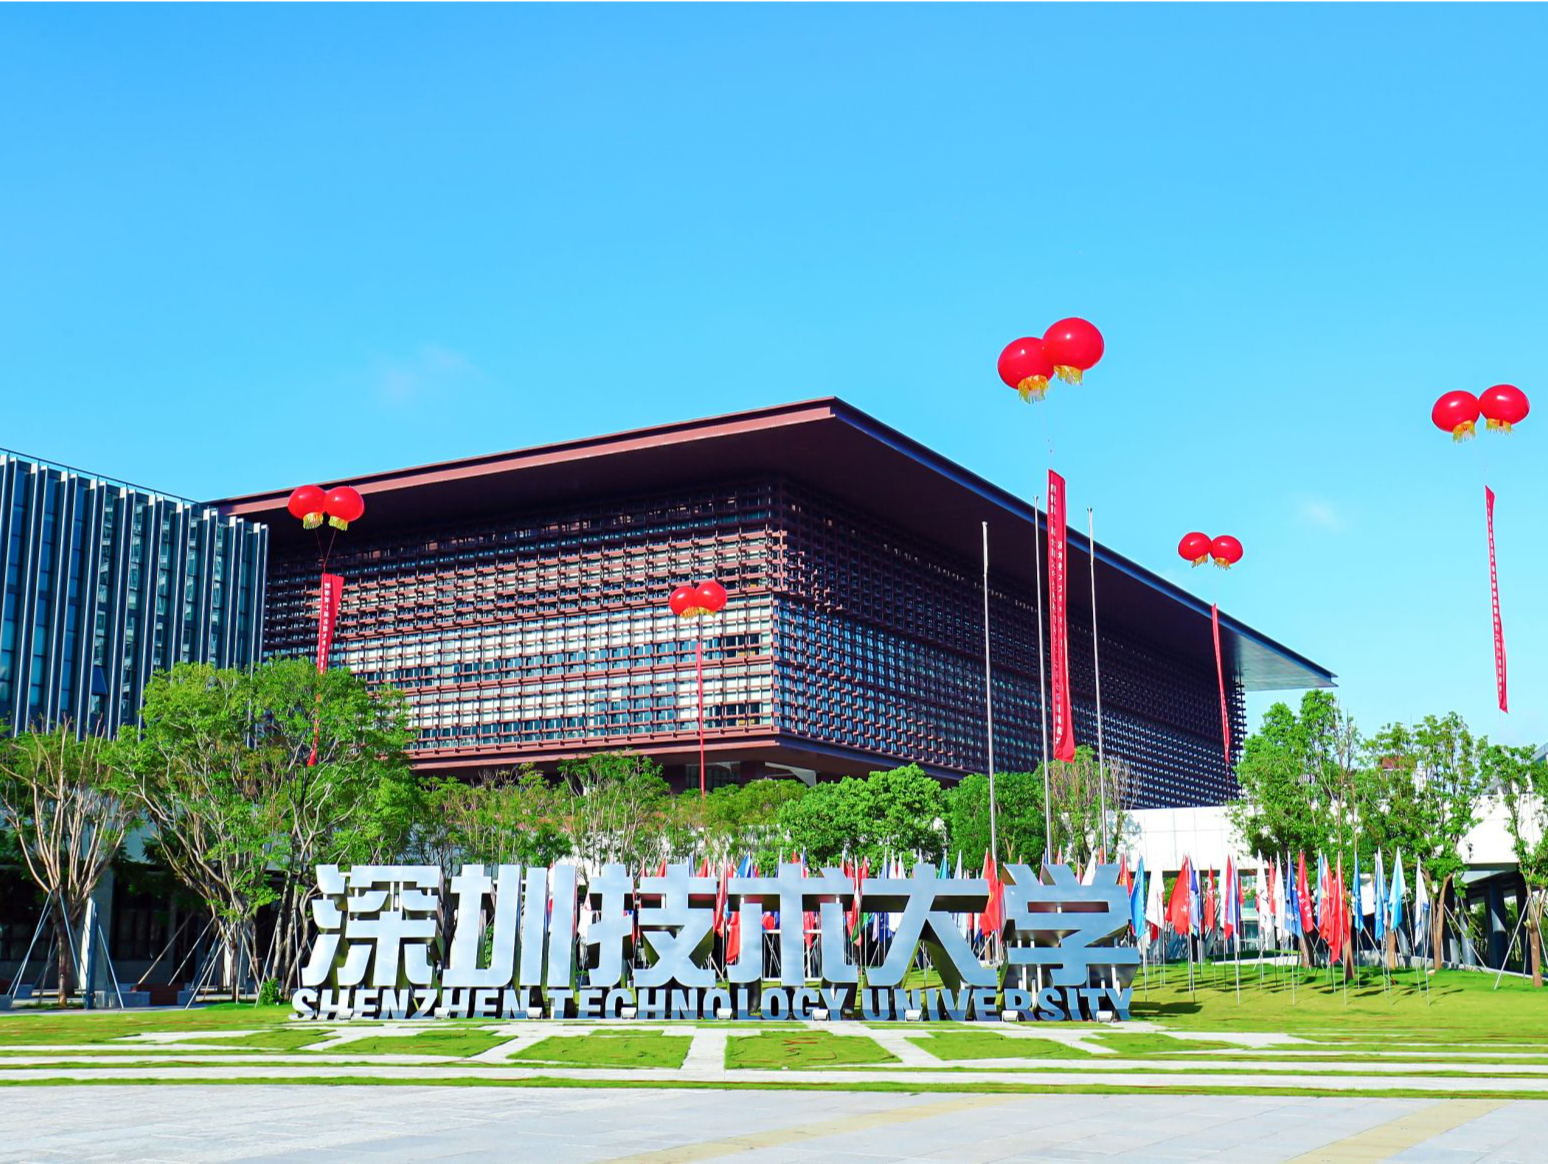 探索高等教育改革发展之路 深圳技术大学着力打造应用型大学标杆